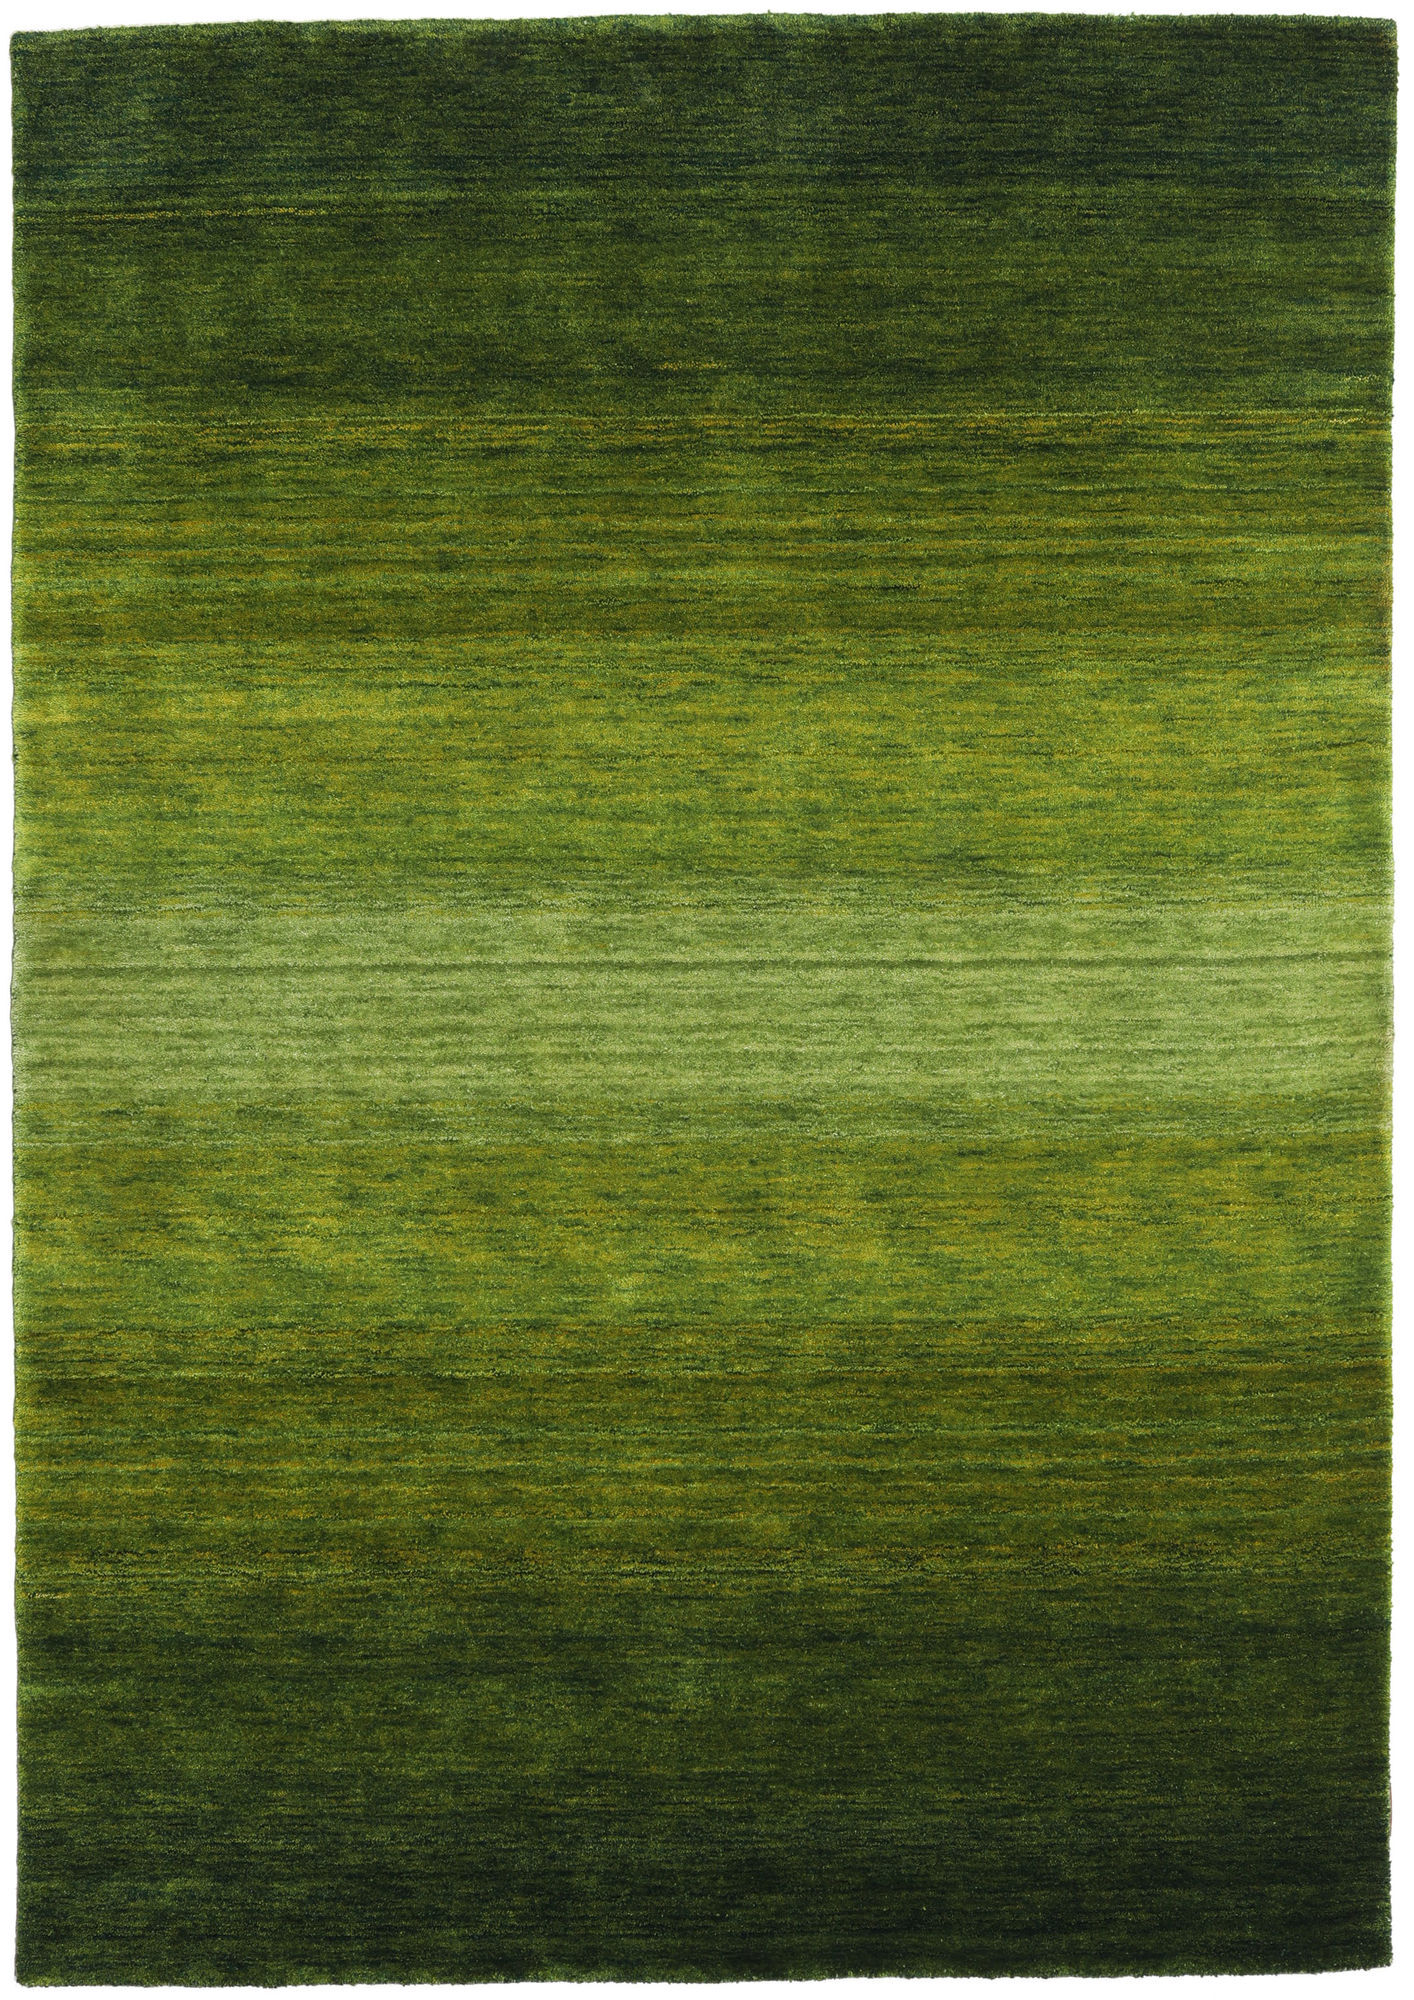 Annodato a mano. Provenienza: India Gabbeh Rainbow Tappeto - Verde 160x230